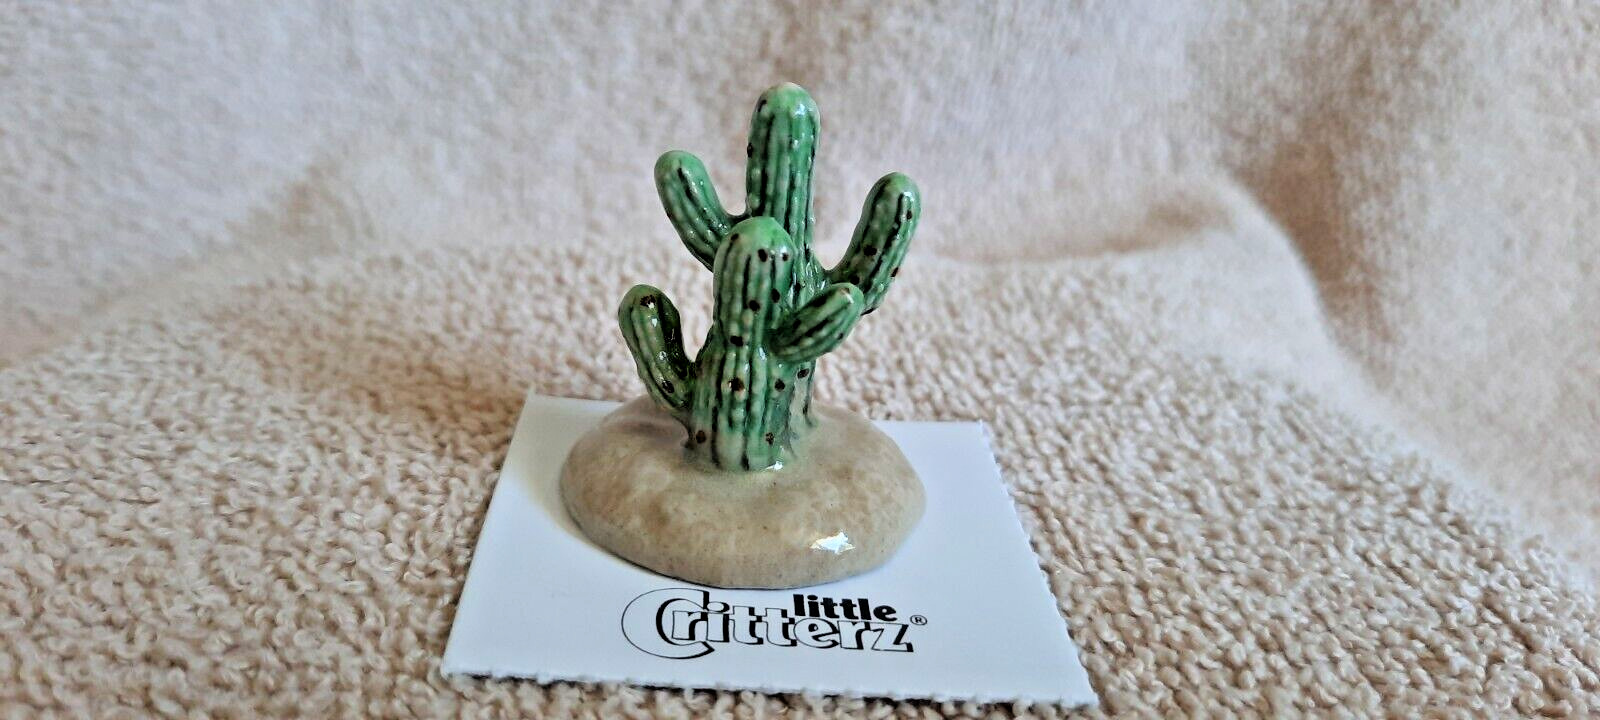 LITTLE CRITTERZ Saguaro Cactus Miniature Figurine New  LC717